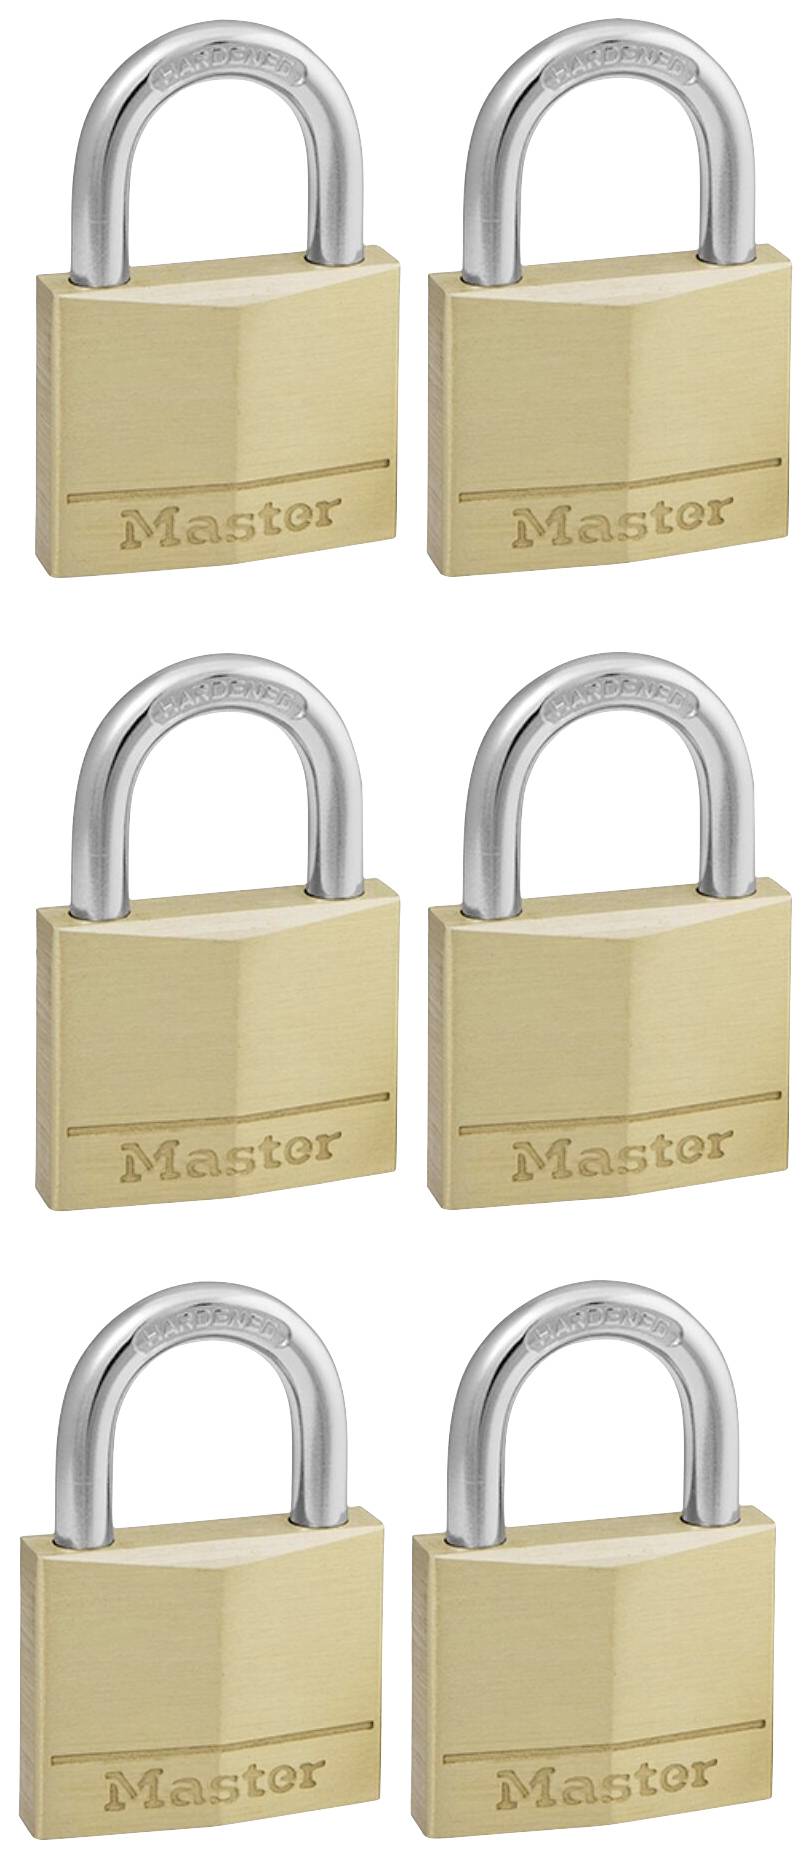 120T paquet de cadenas en laiton massif, 2 unités – Master Lock